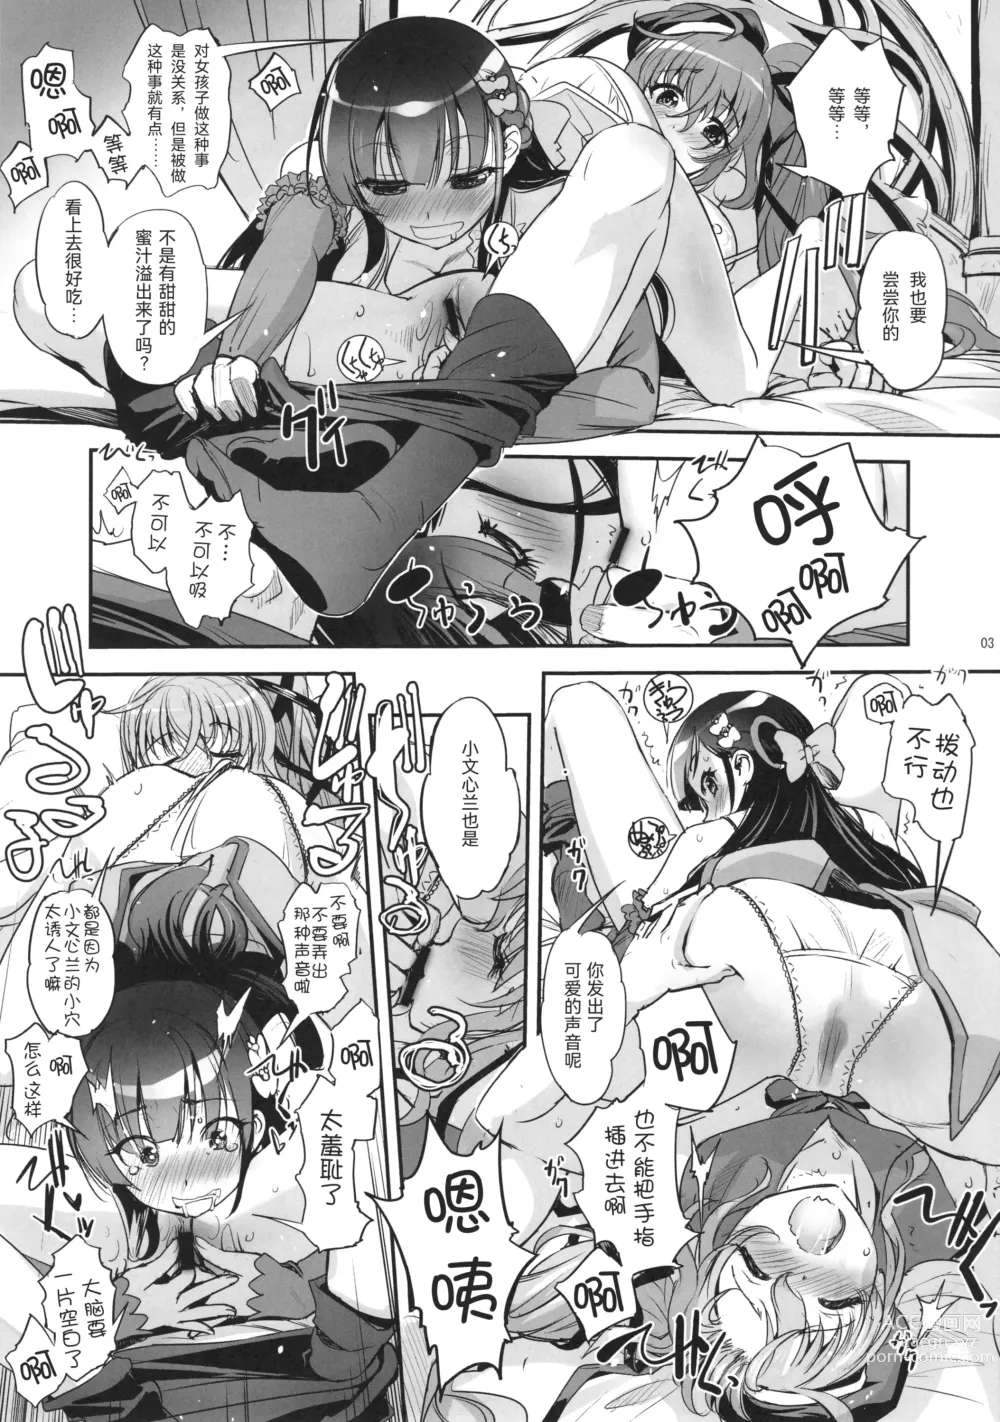 Page 3 of doujinshi Hana Kishi Engi 1.5